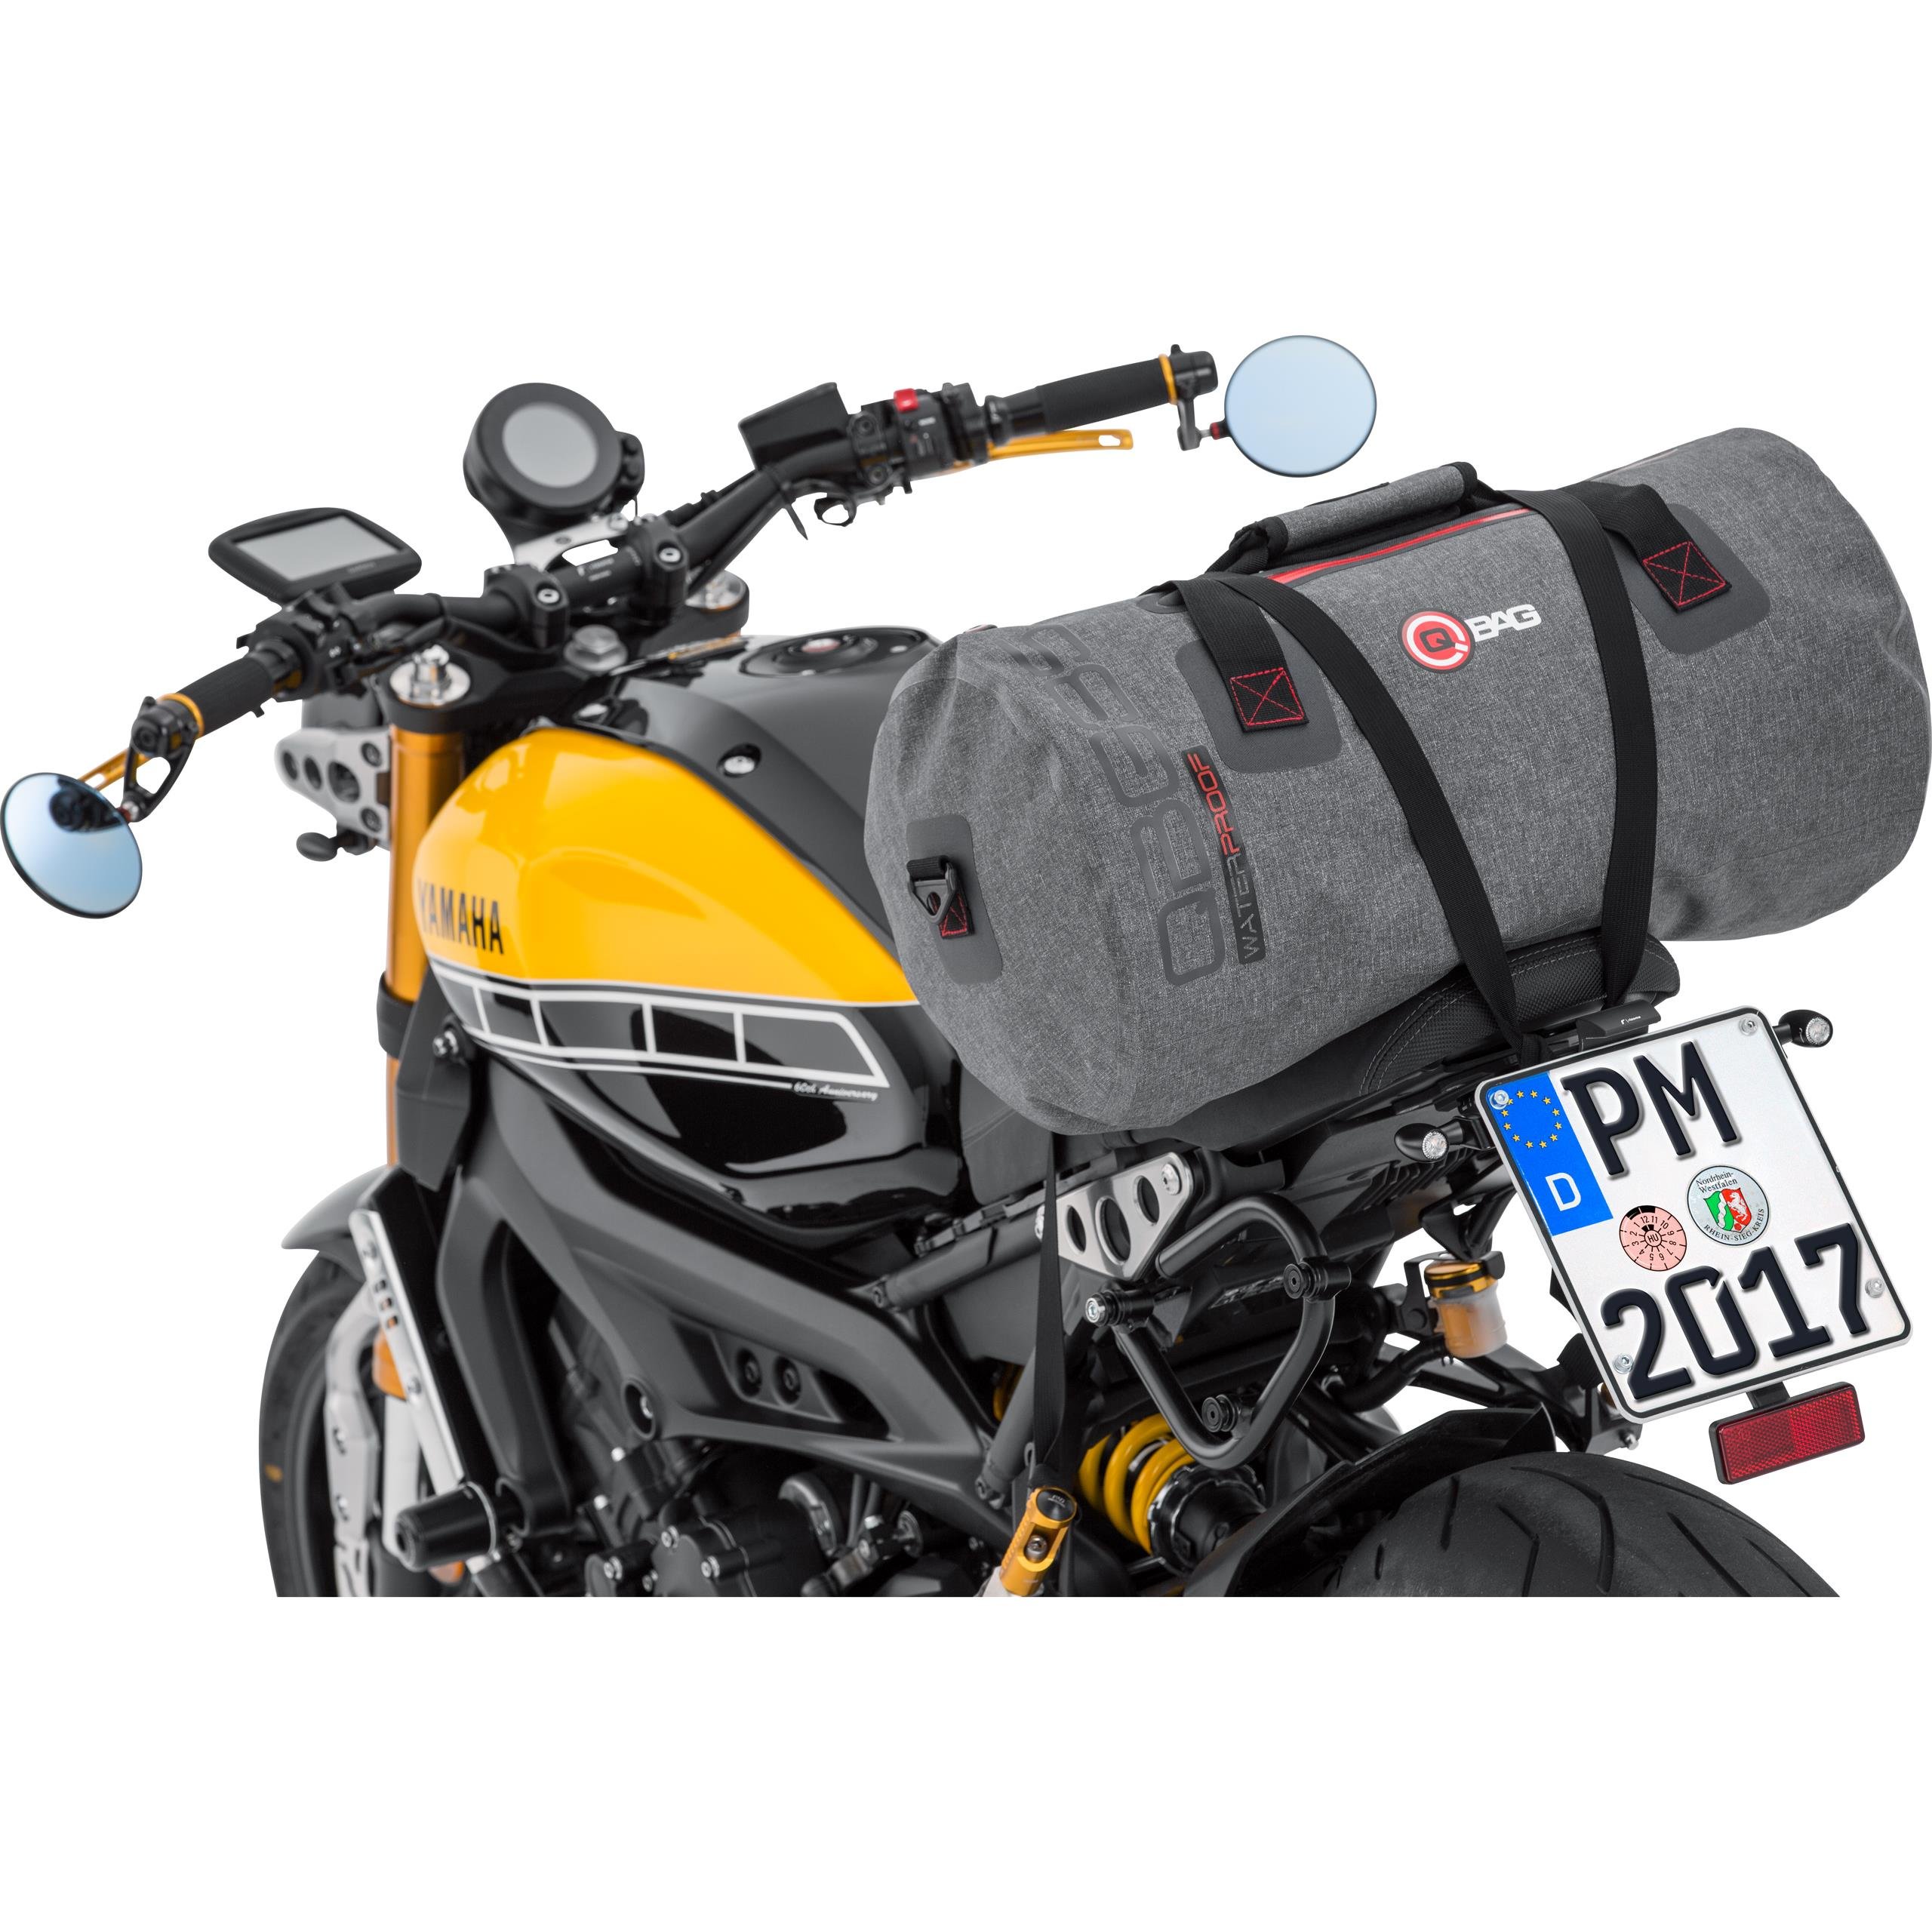 QBag Motorrad Heck Tasche - Widerstandsfähig, Reißfest, Wasserdicht - Gepäckrolle mit 35 Liter Stauraum, Großes Hauptfach, Zusätzliche Einschubtasche - Grau